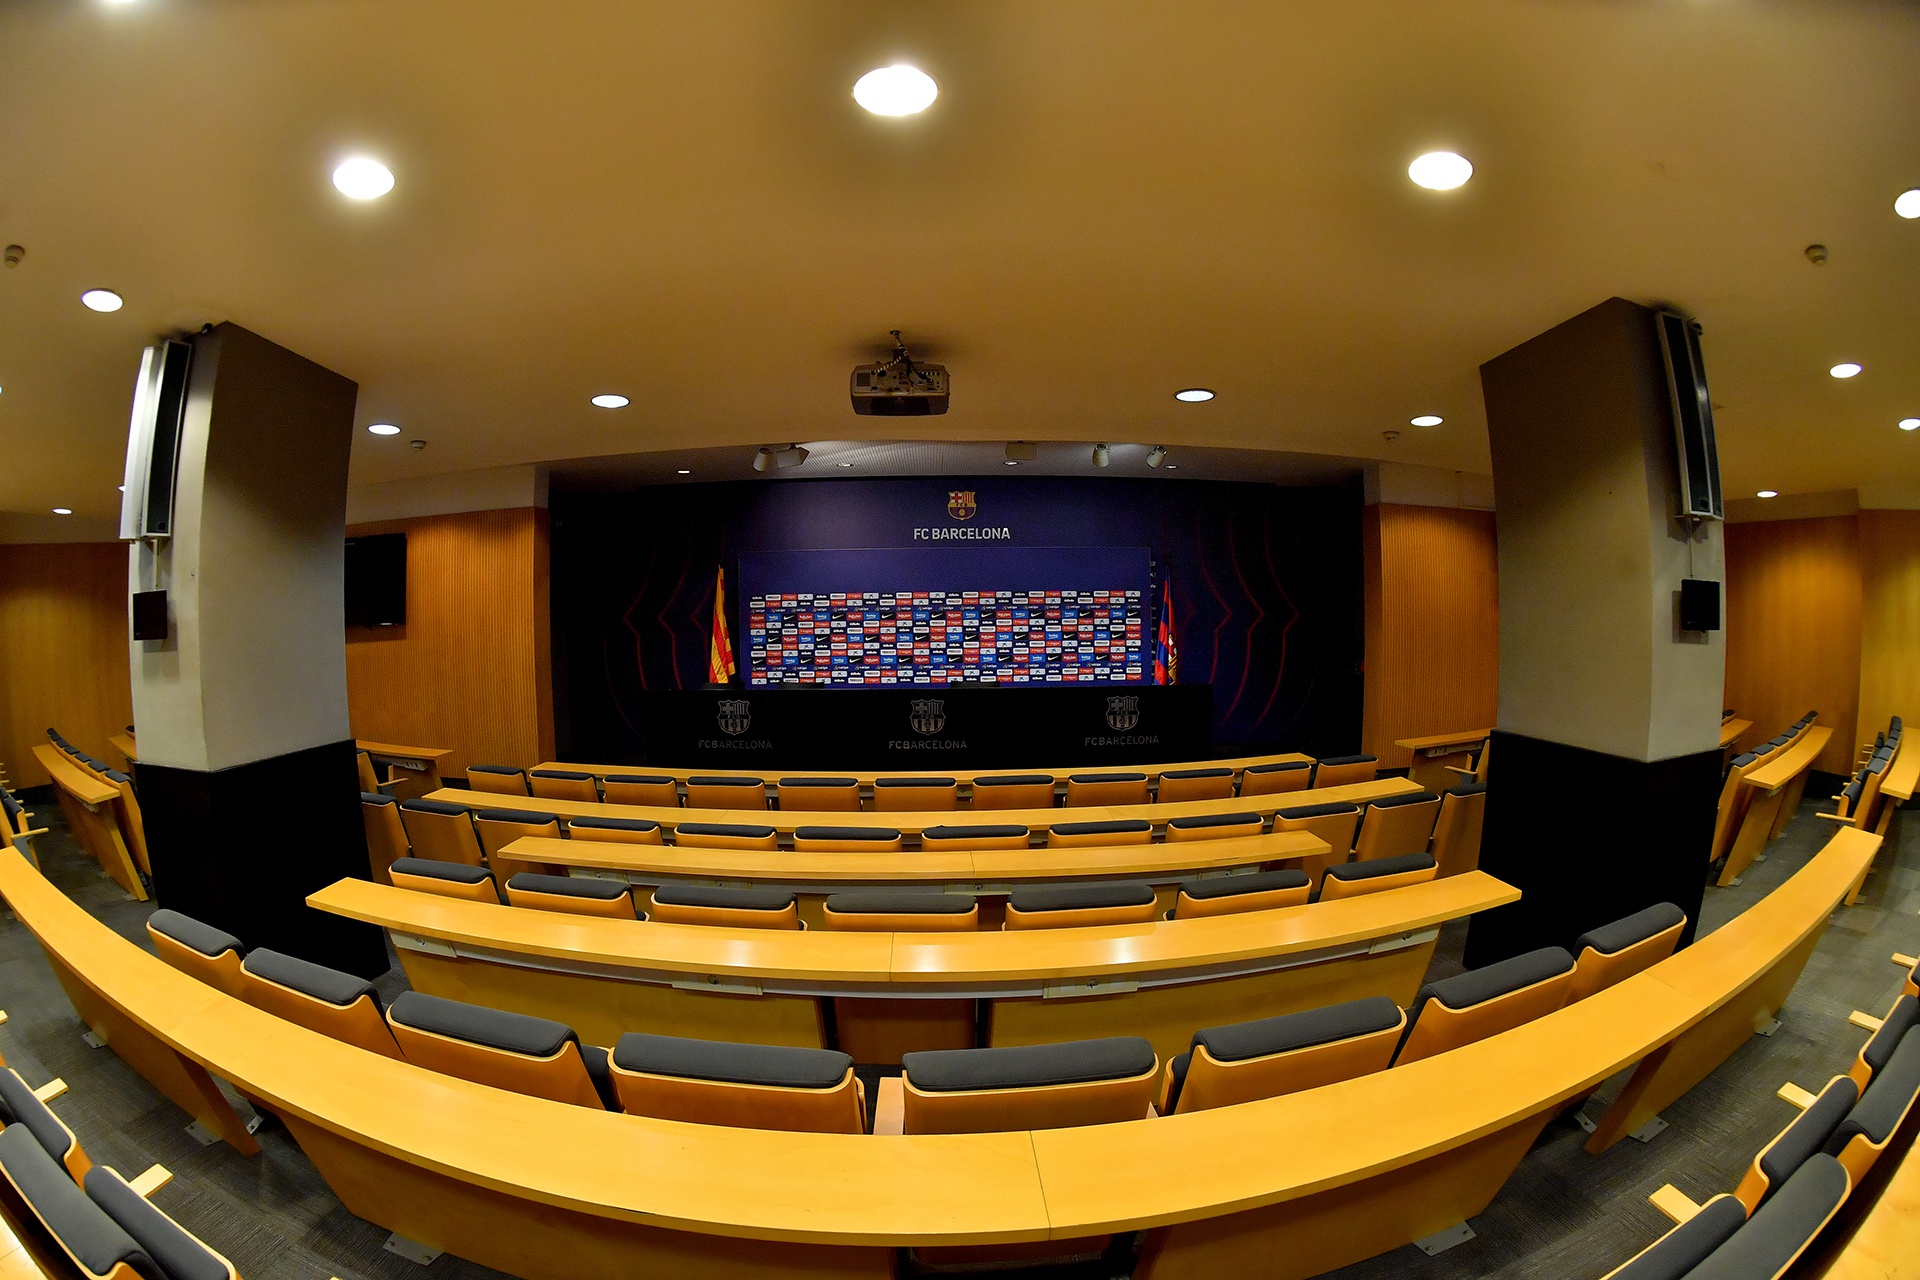 Sân vận động Camp Nou – Tất cả những gì cần biết về sân nhà của Barca 12